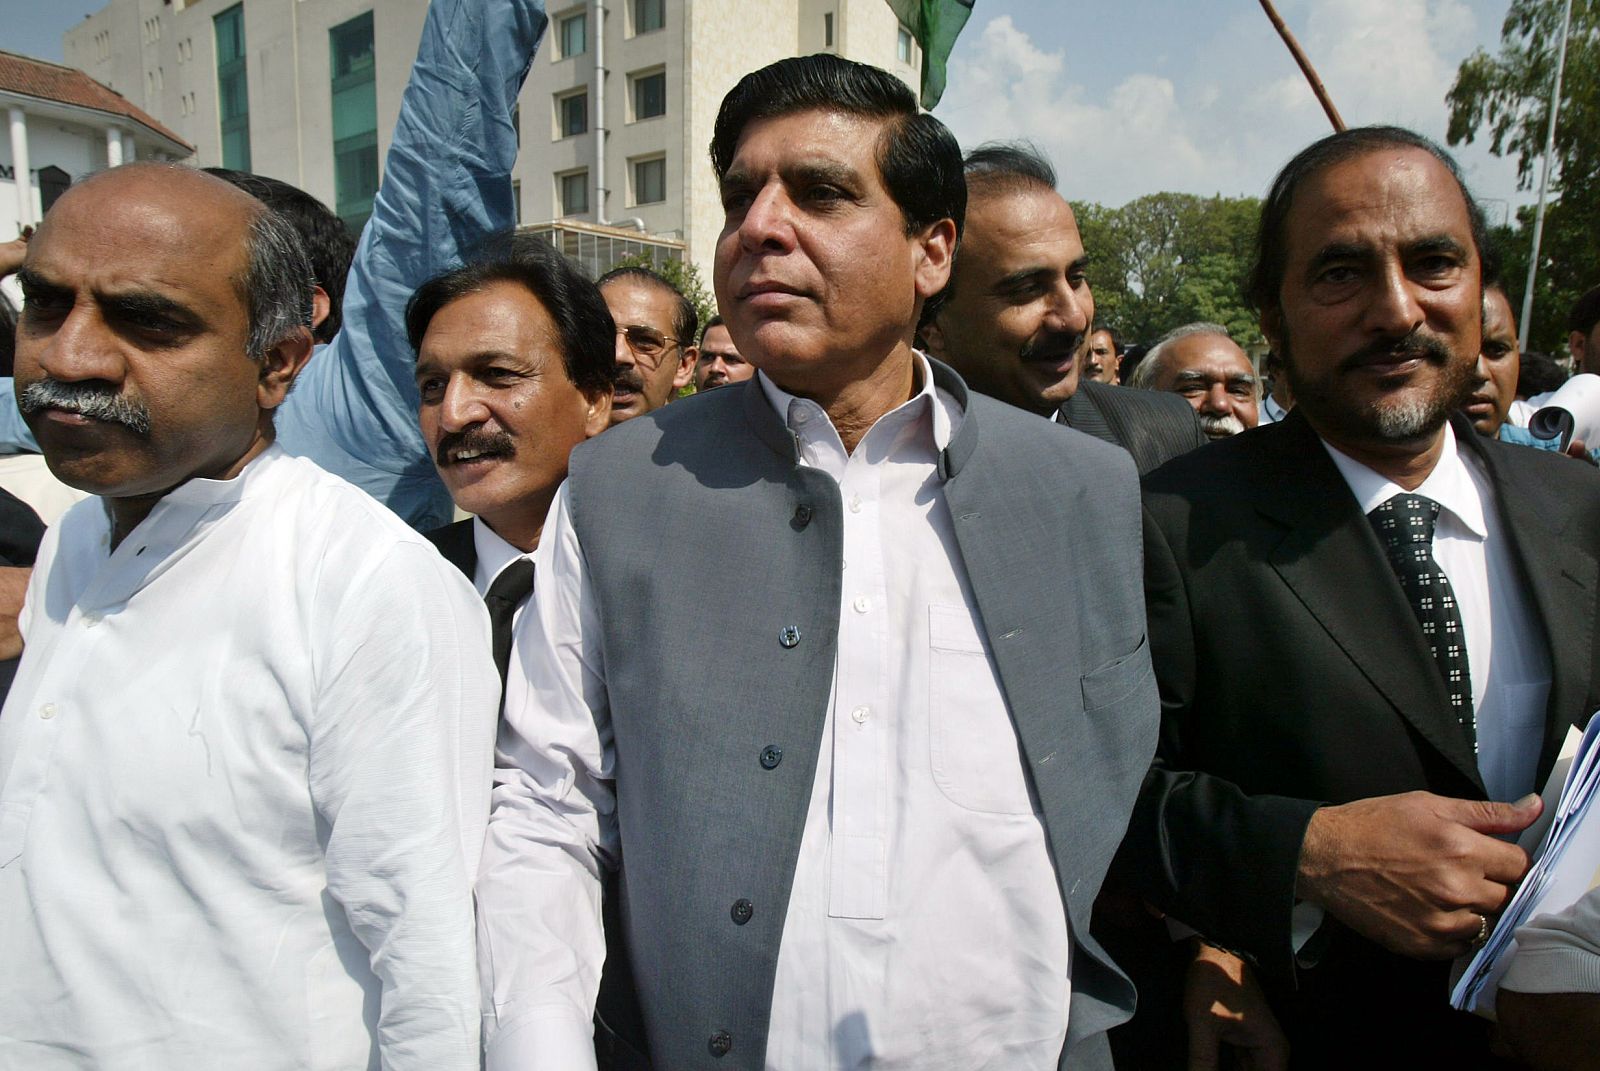 Fotografía de archivo del candidato a primer ministro de Pakistán, Raja Pervez Ashraf (en el centro de la imagen)